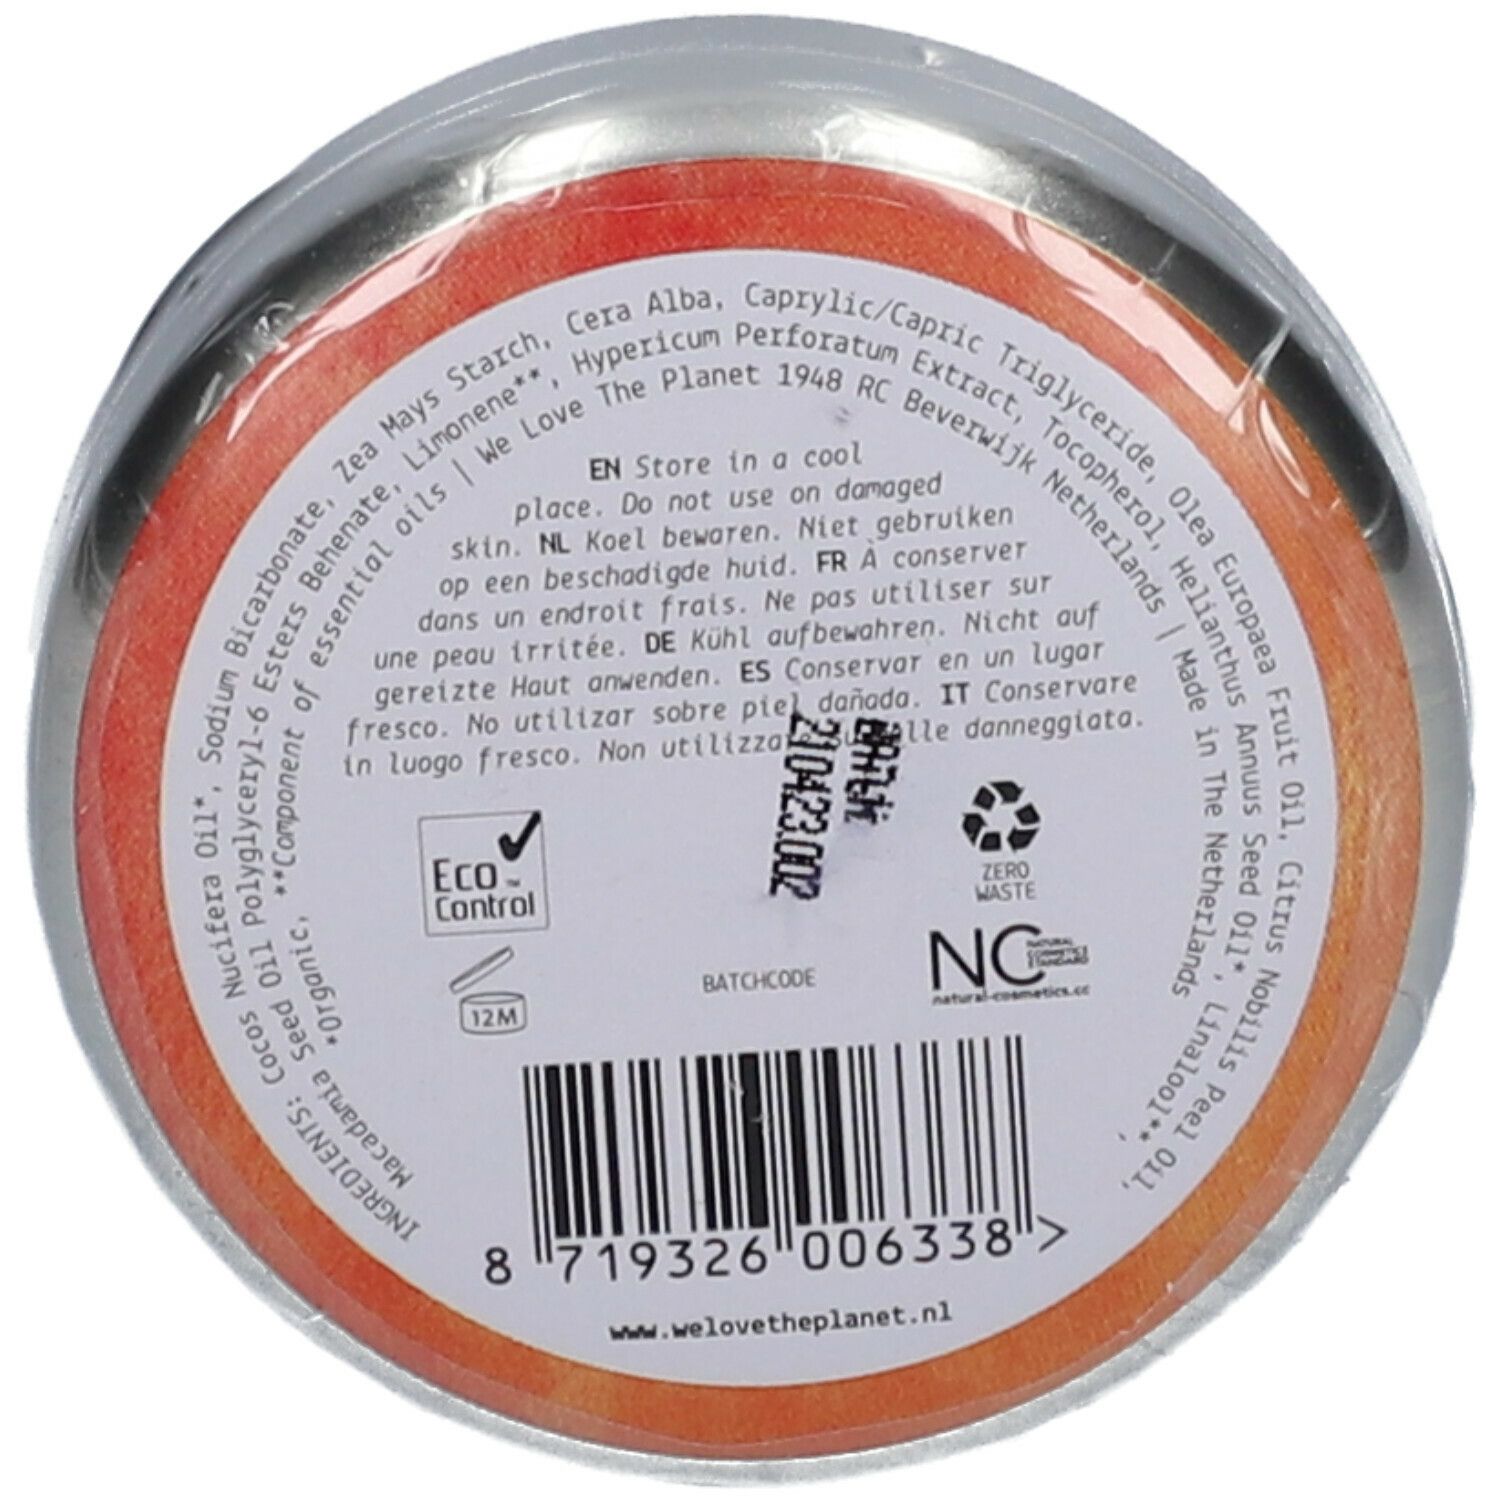 We love Deodorant Original Orange